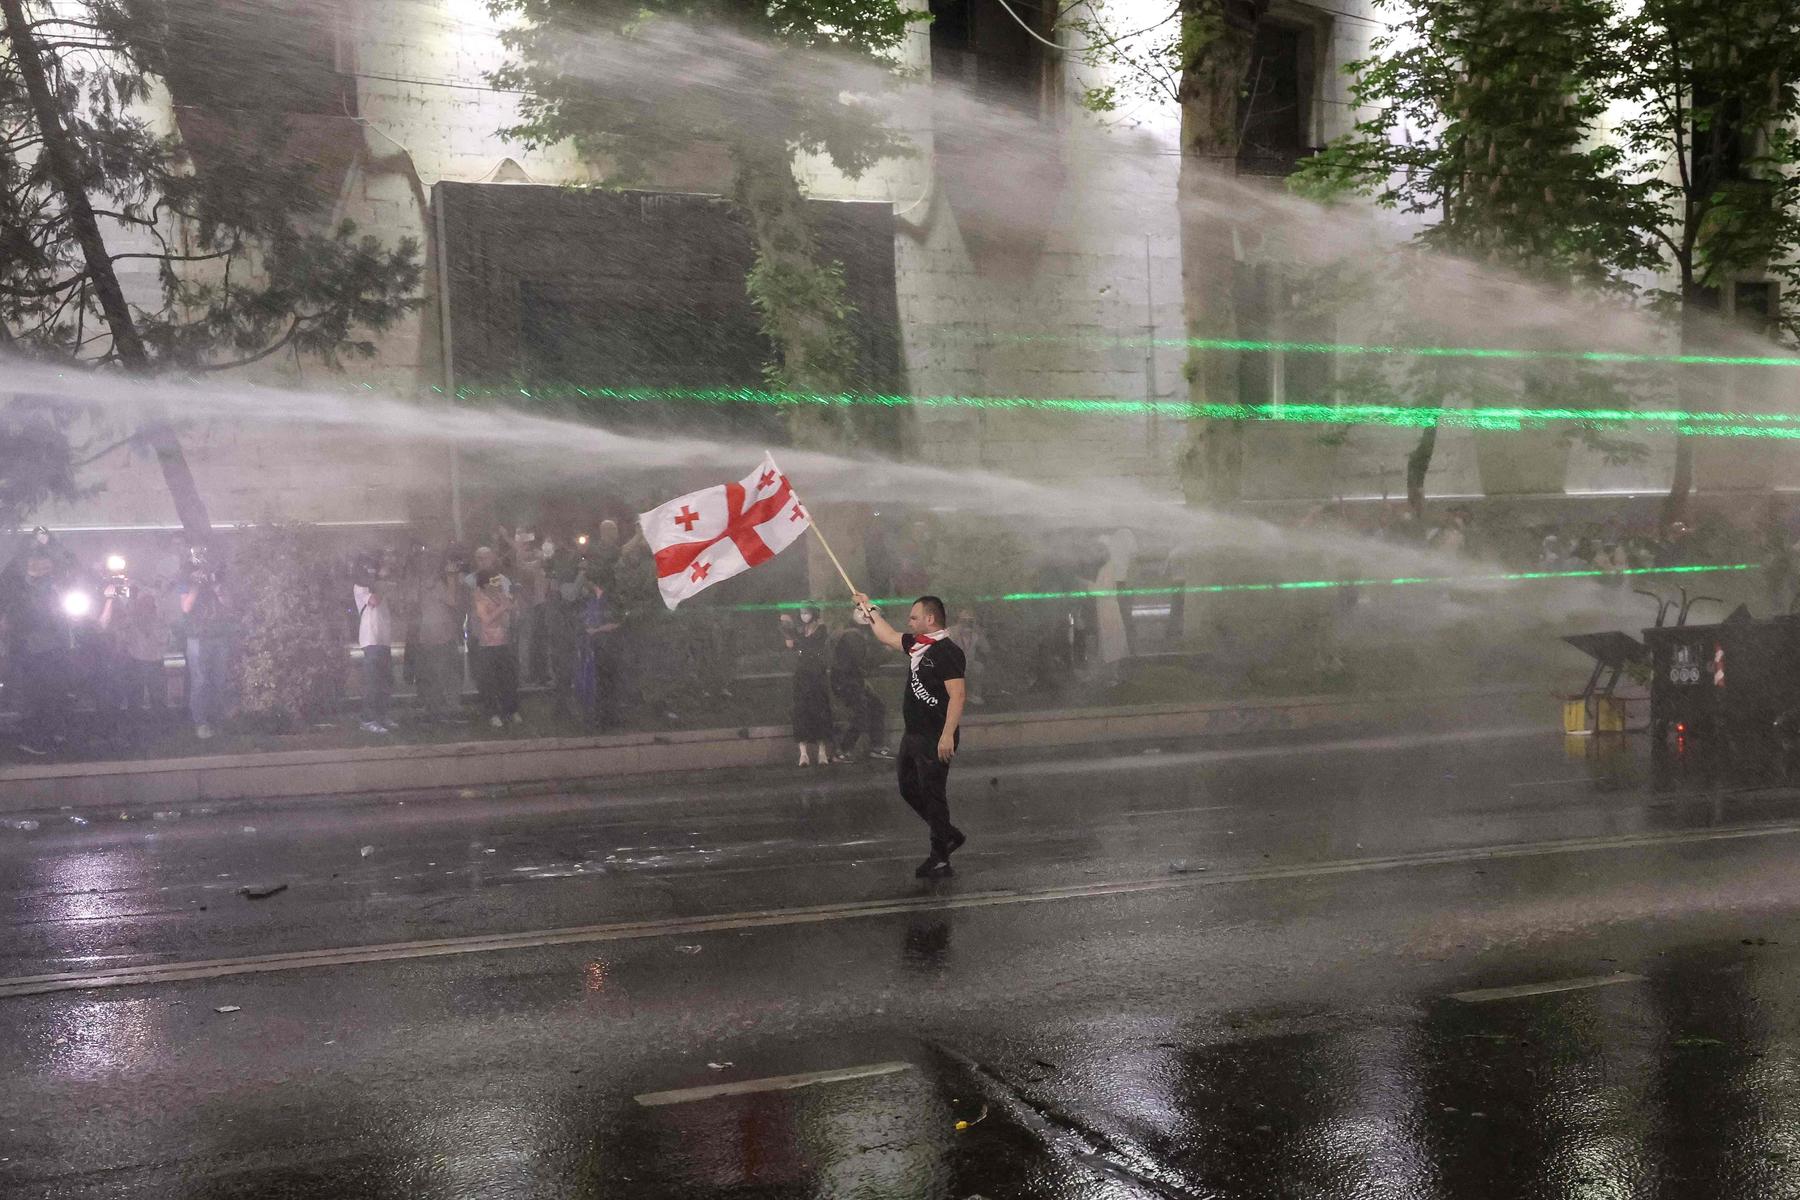 anti-regierungsproteste in georgien: oppositionschef wirft polizei misshandlung vor